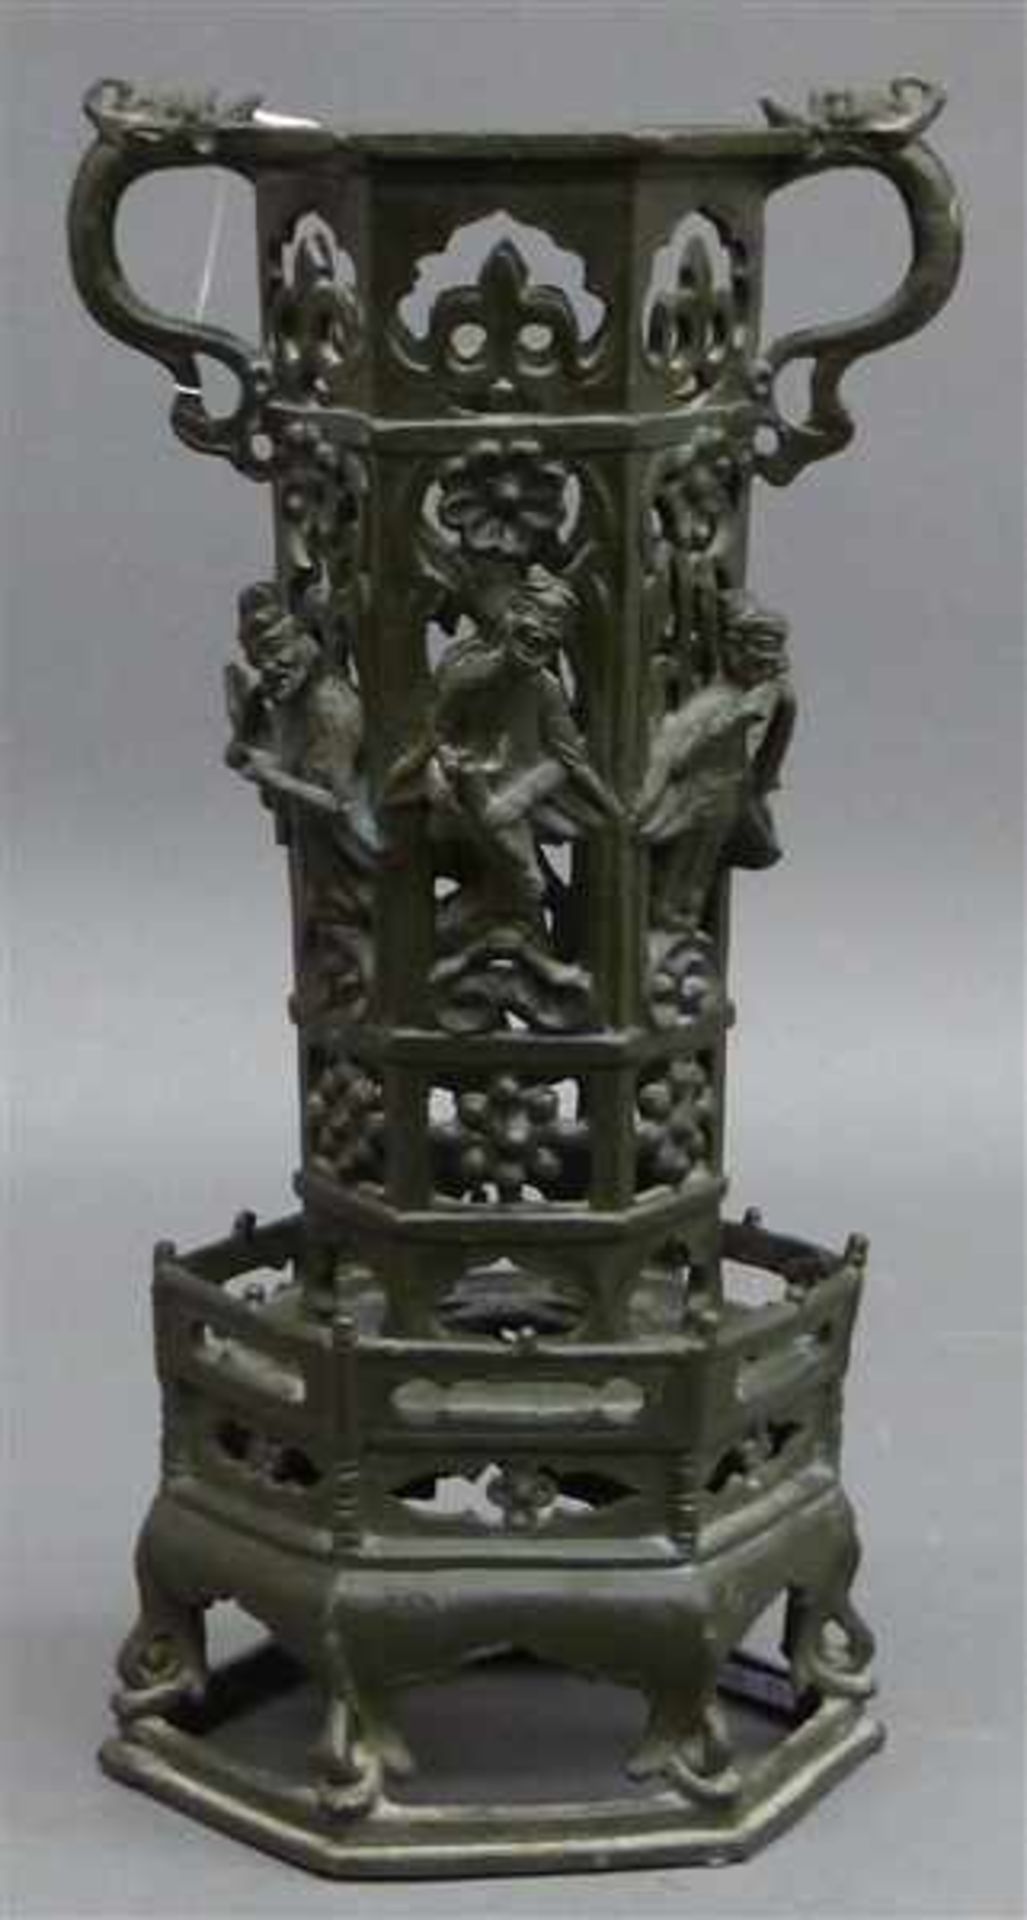 RäuchergefaßMetall, China, Turmförmig, beidseitiger Henkel, Personendekor, h 28 cm,